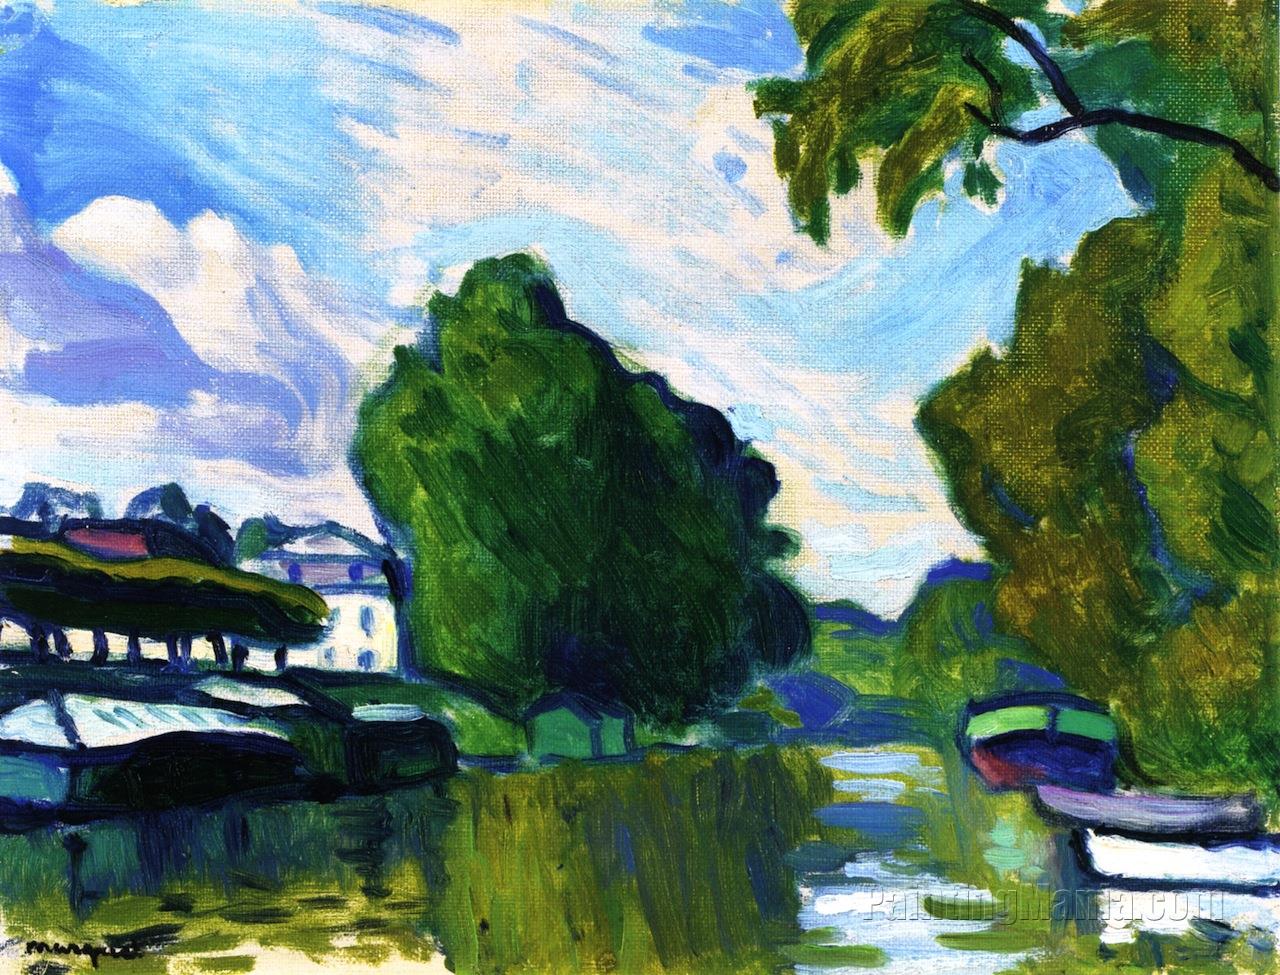 Poissy, by the Seine